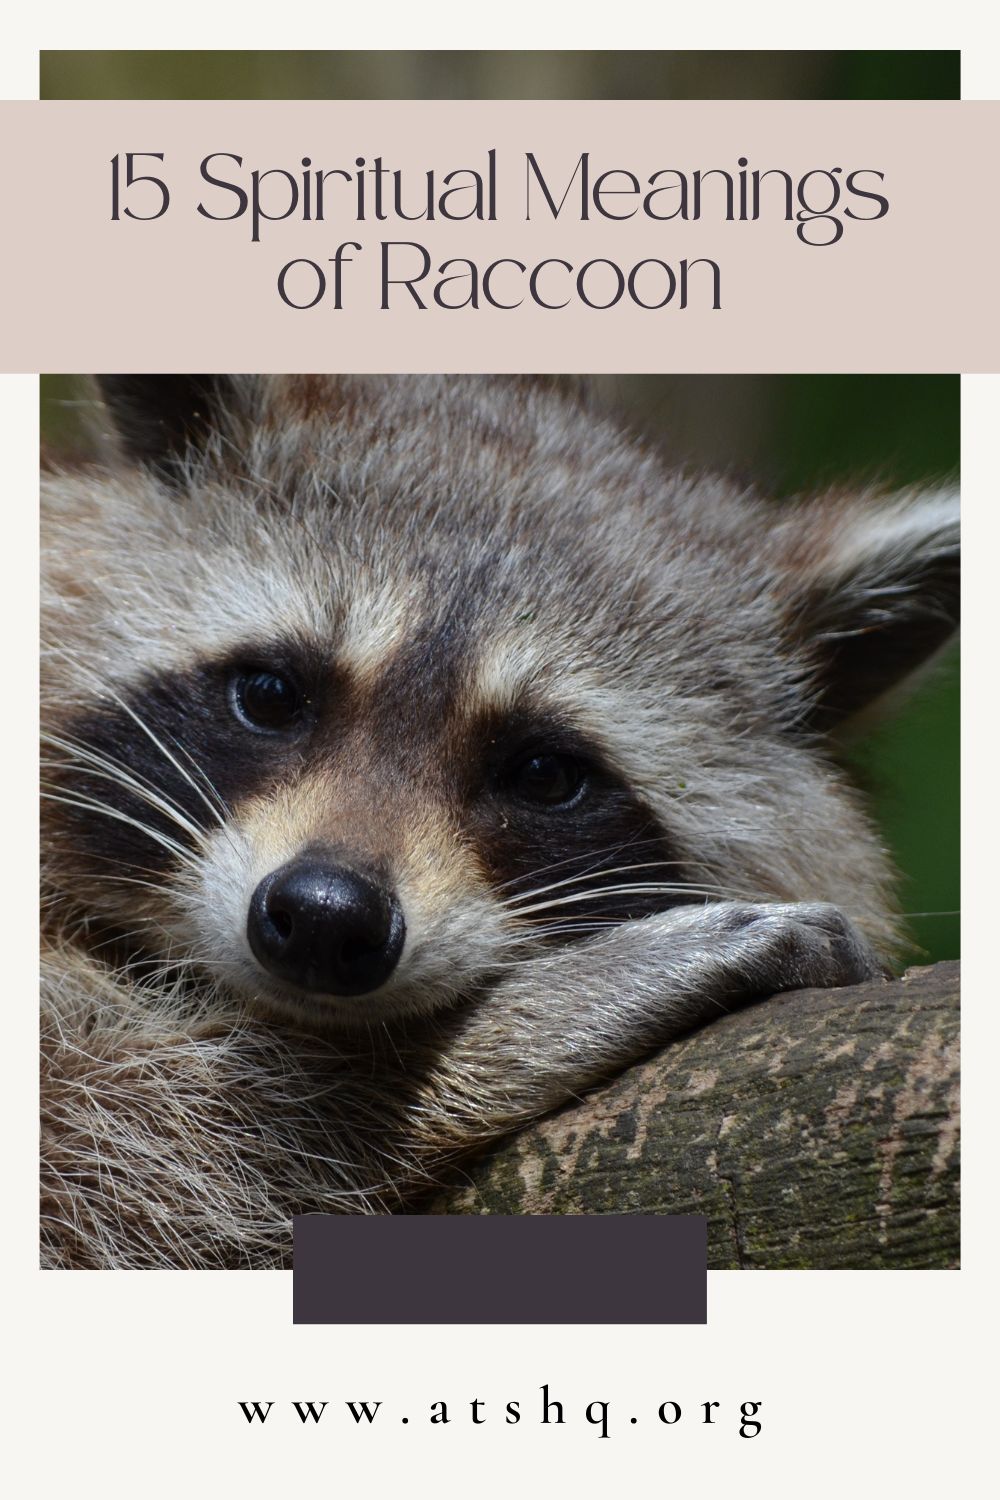 Raccoon Meanings